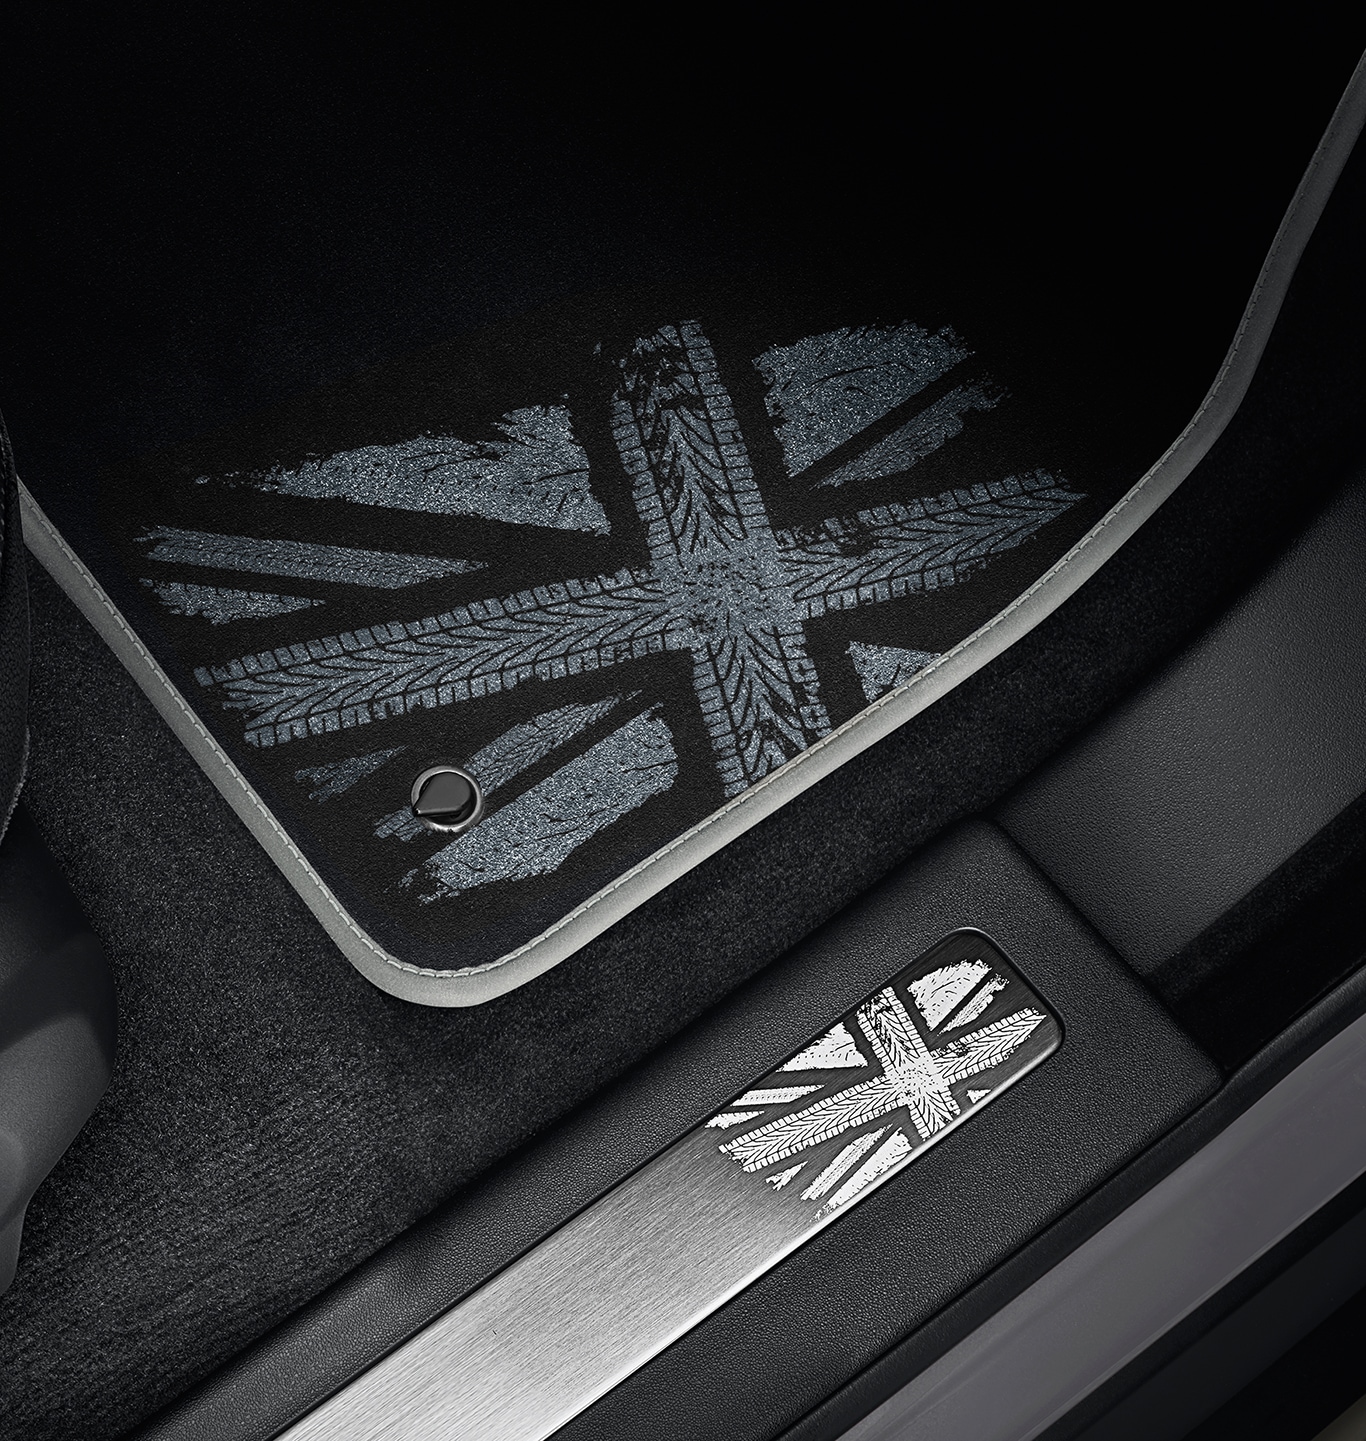 Juego de tapetes de alfombra, Bandera Reino Unido monocromático image